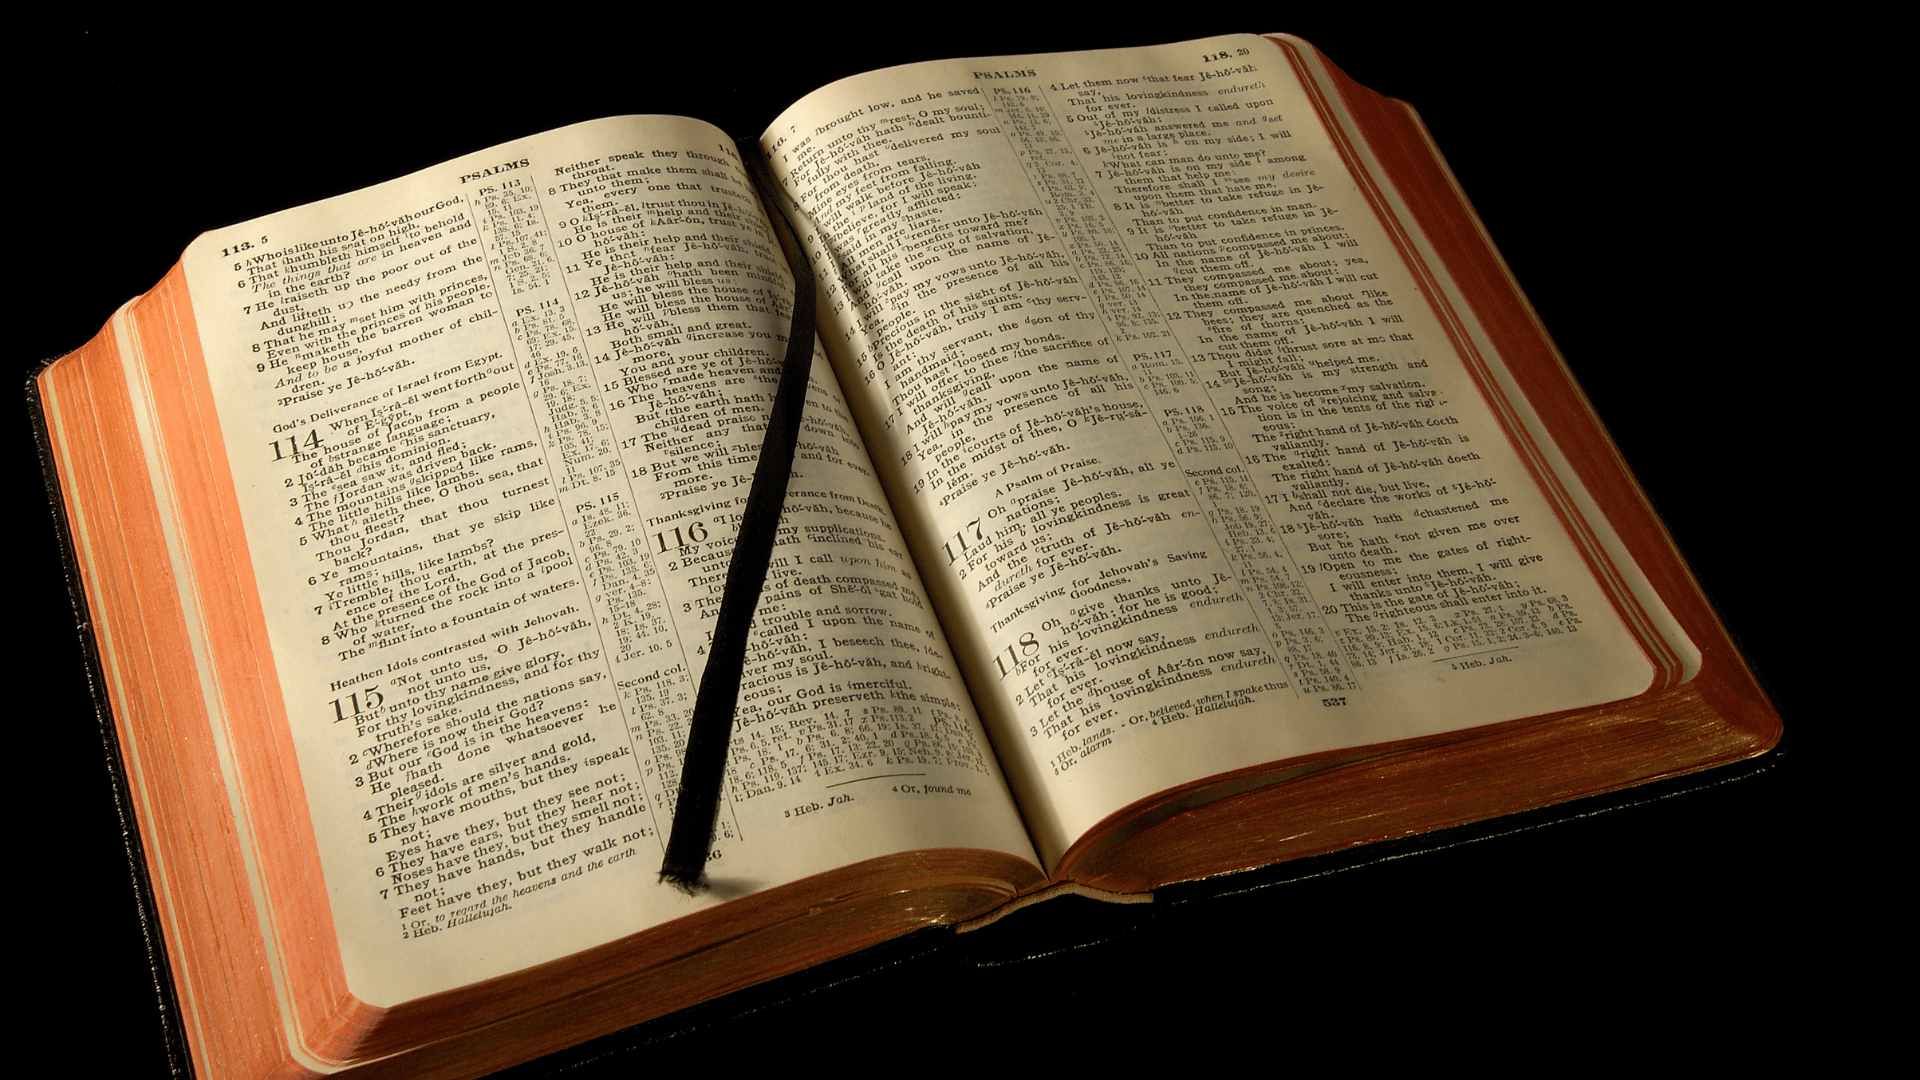 Imagem de uma bíblia aberta exposta em um fundo escuro.